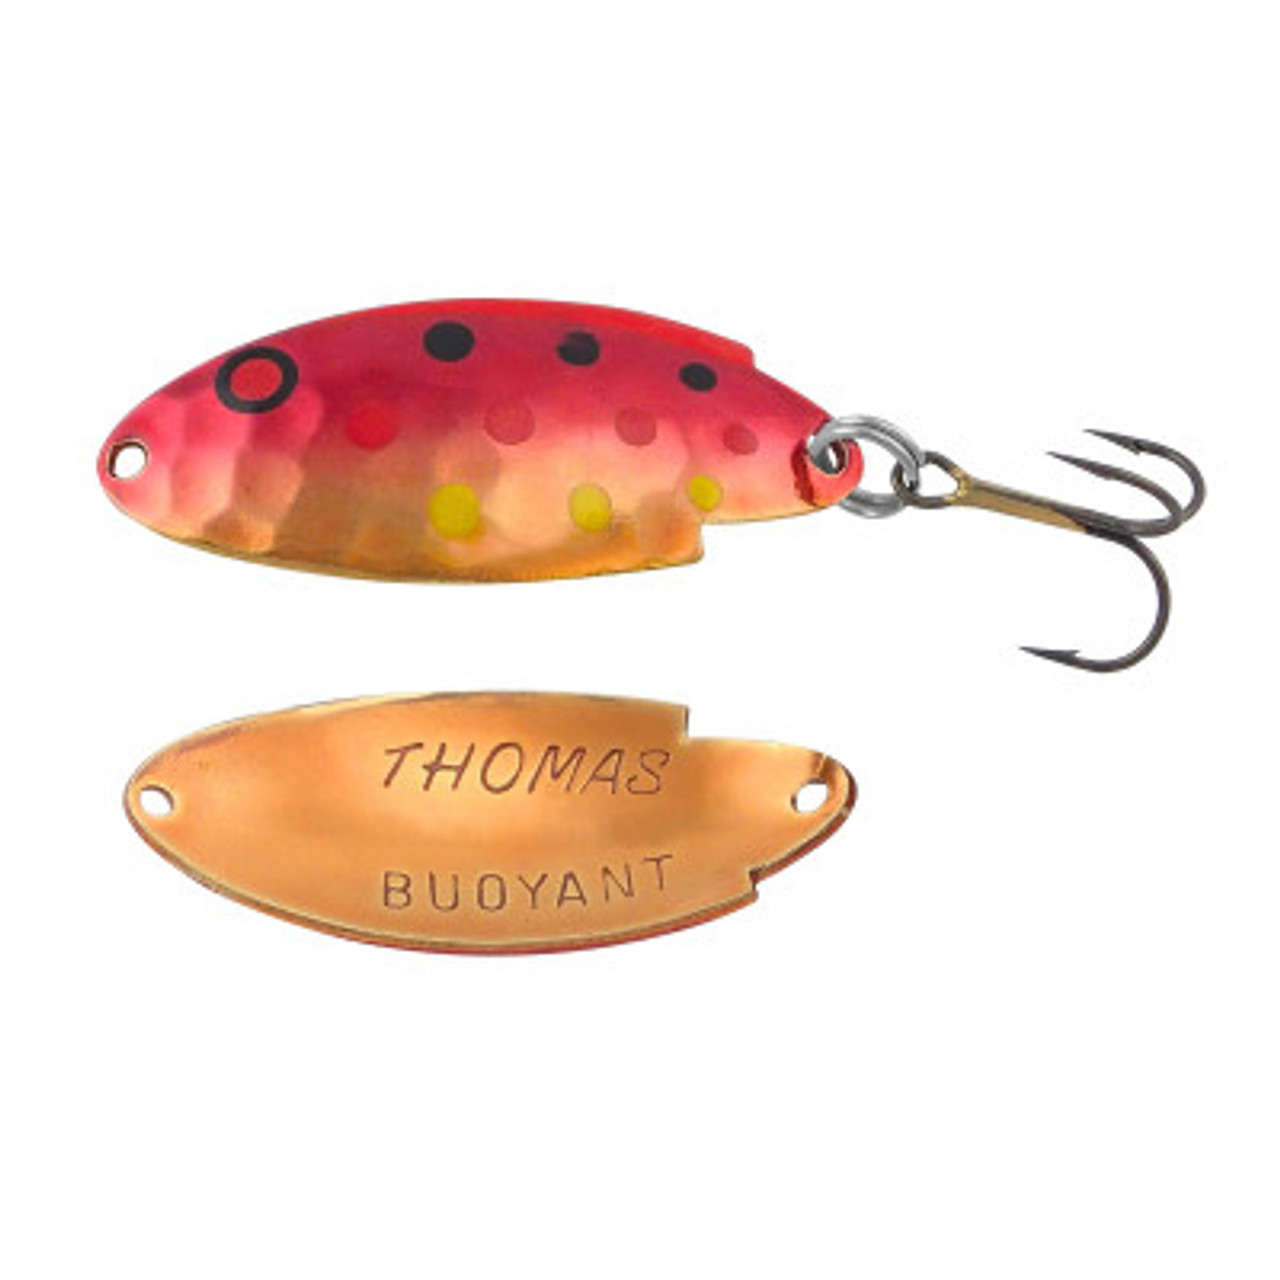 Thomas Buoyant 1/4 oz Trout Spoon Casting Trolling Fishing Lure